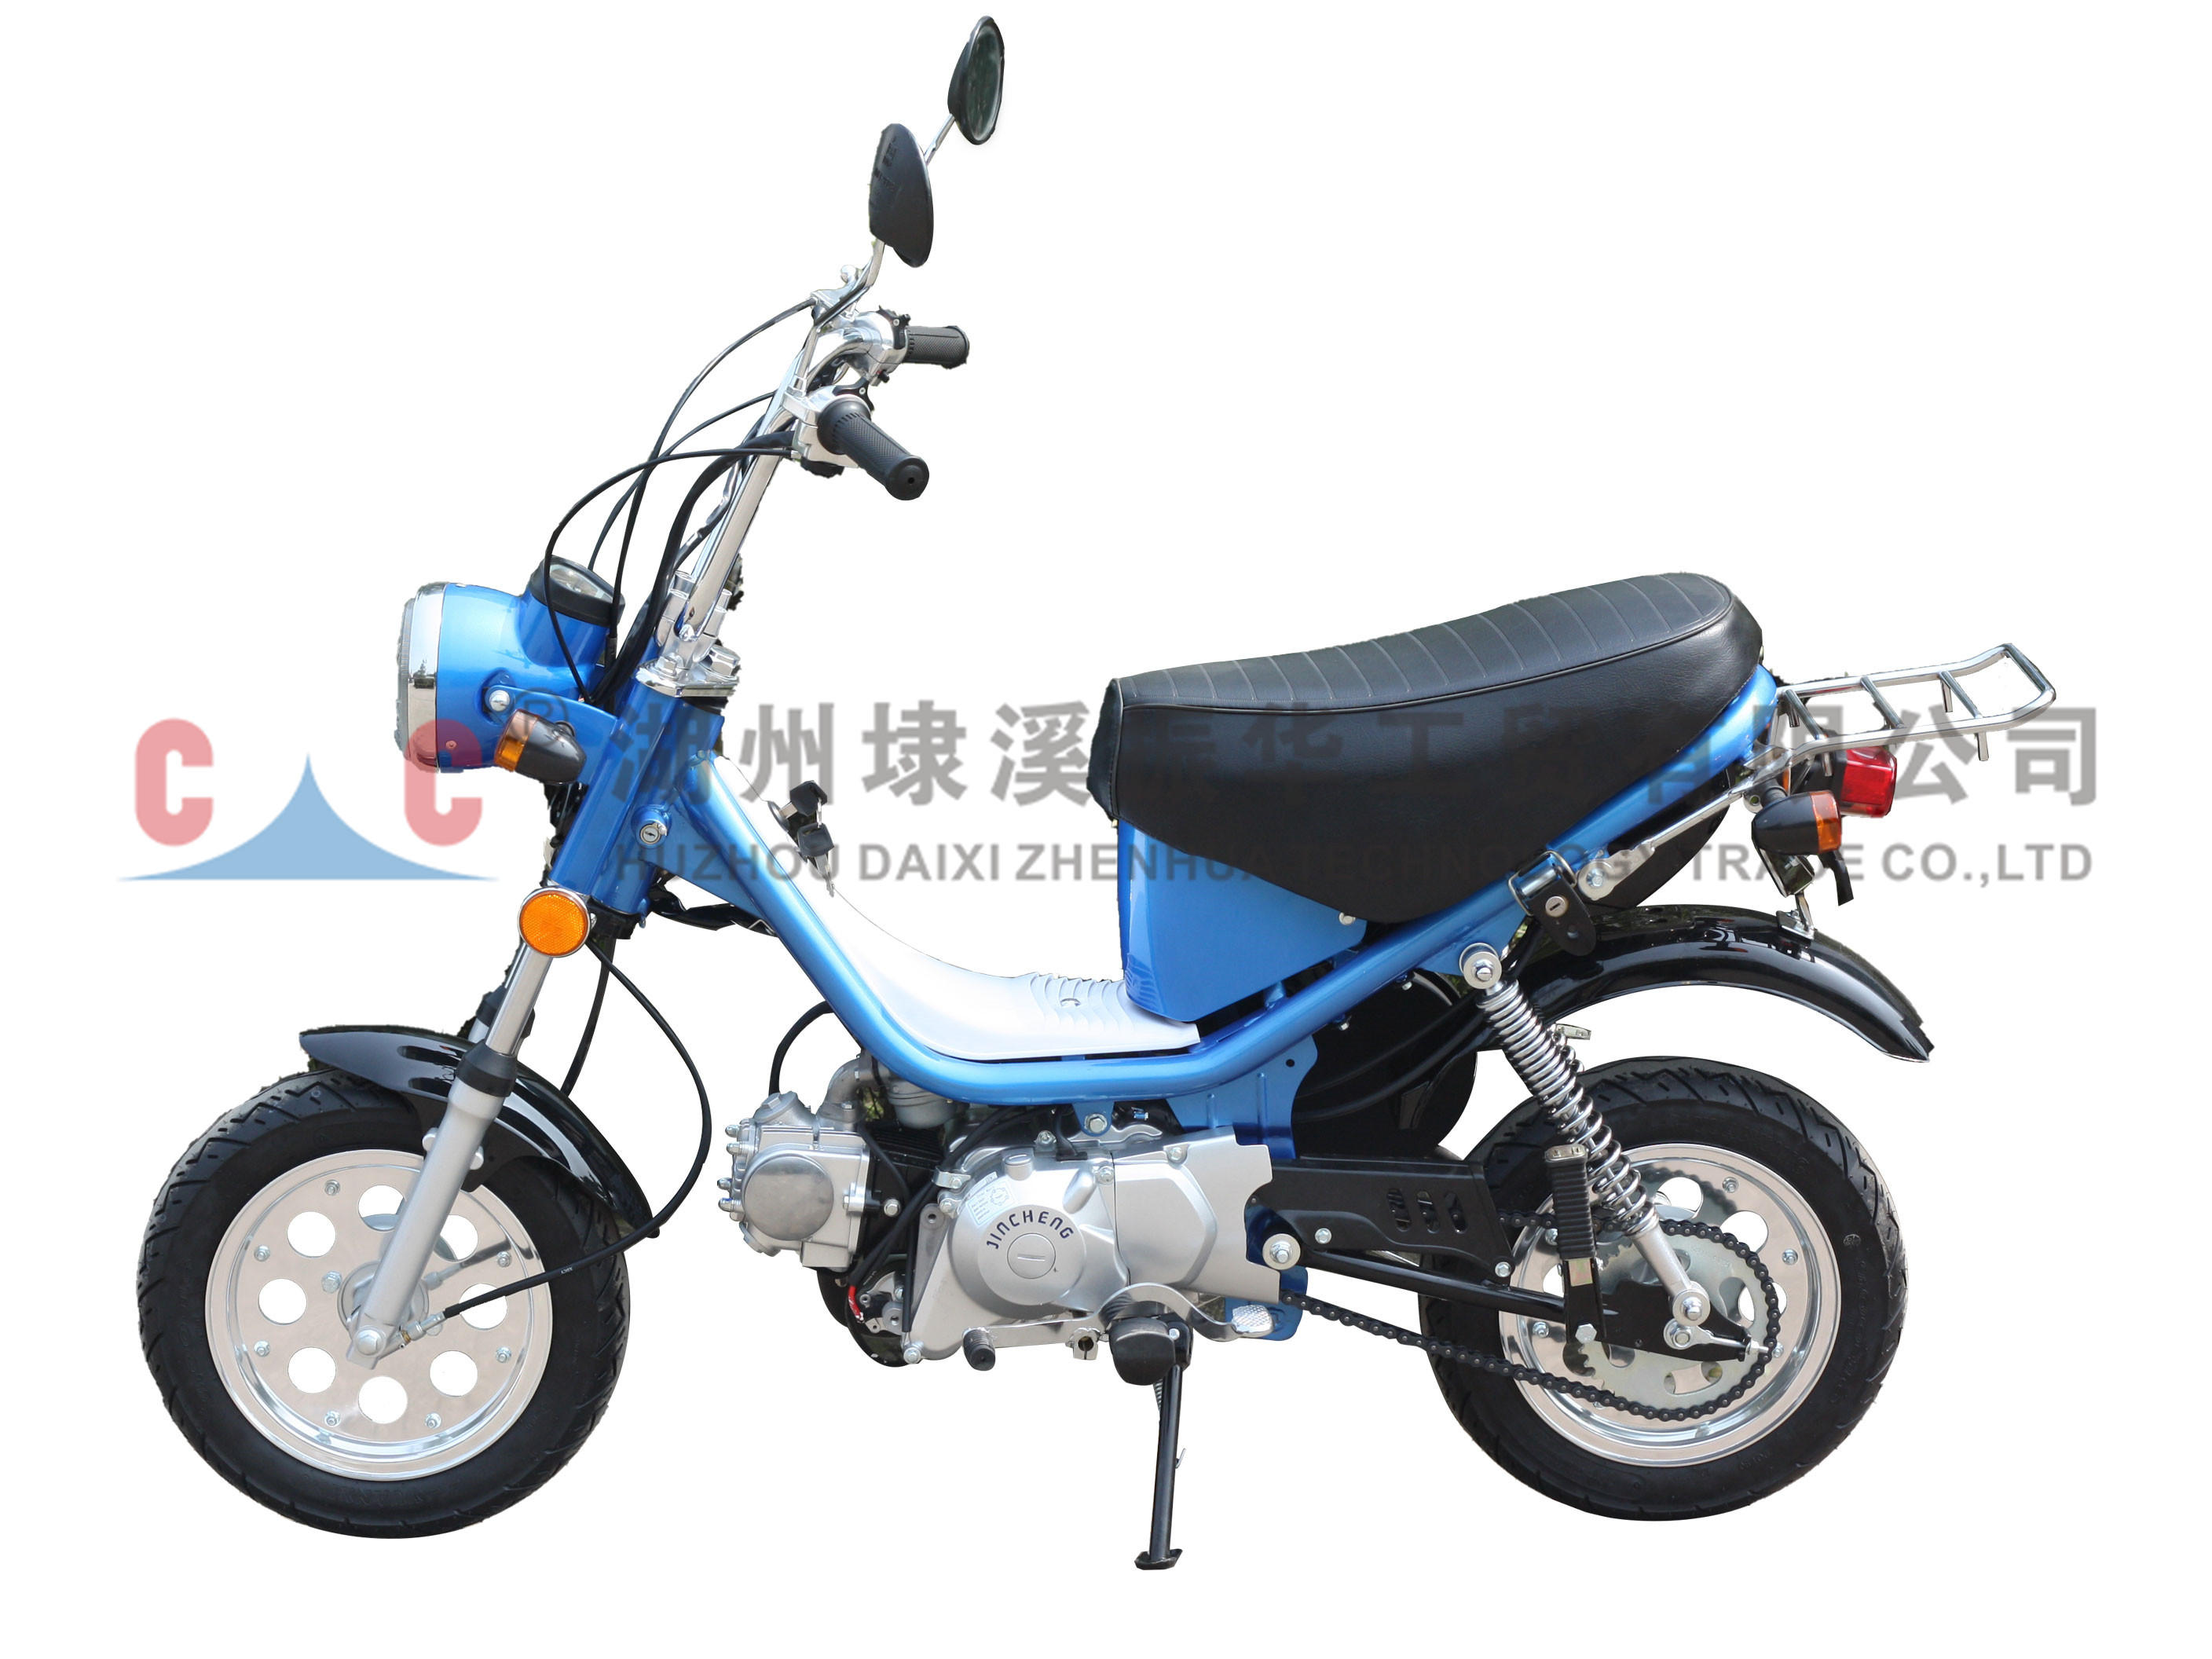 D Nueva motocicleta de gasolina a gas ampliamente utilizada con alta calidad